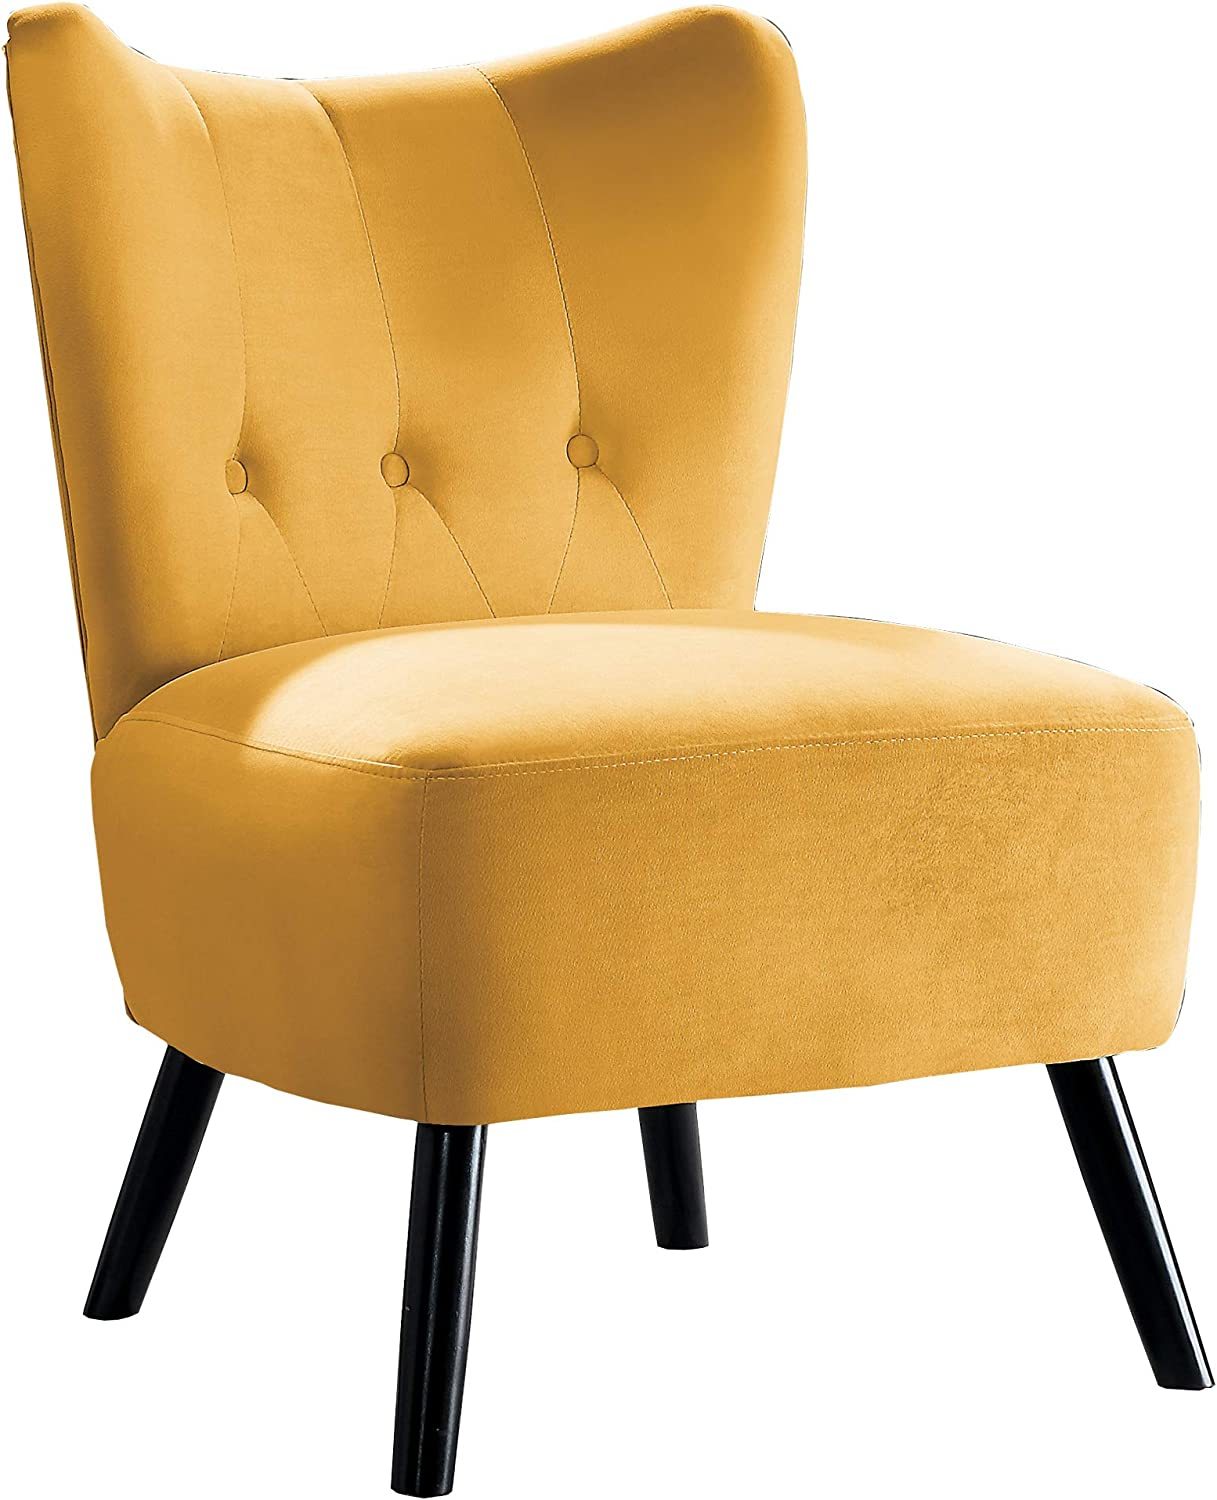 Homelegance Imani Velvet Accent Chair, Yellow - $217.99